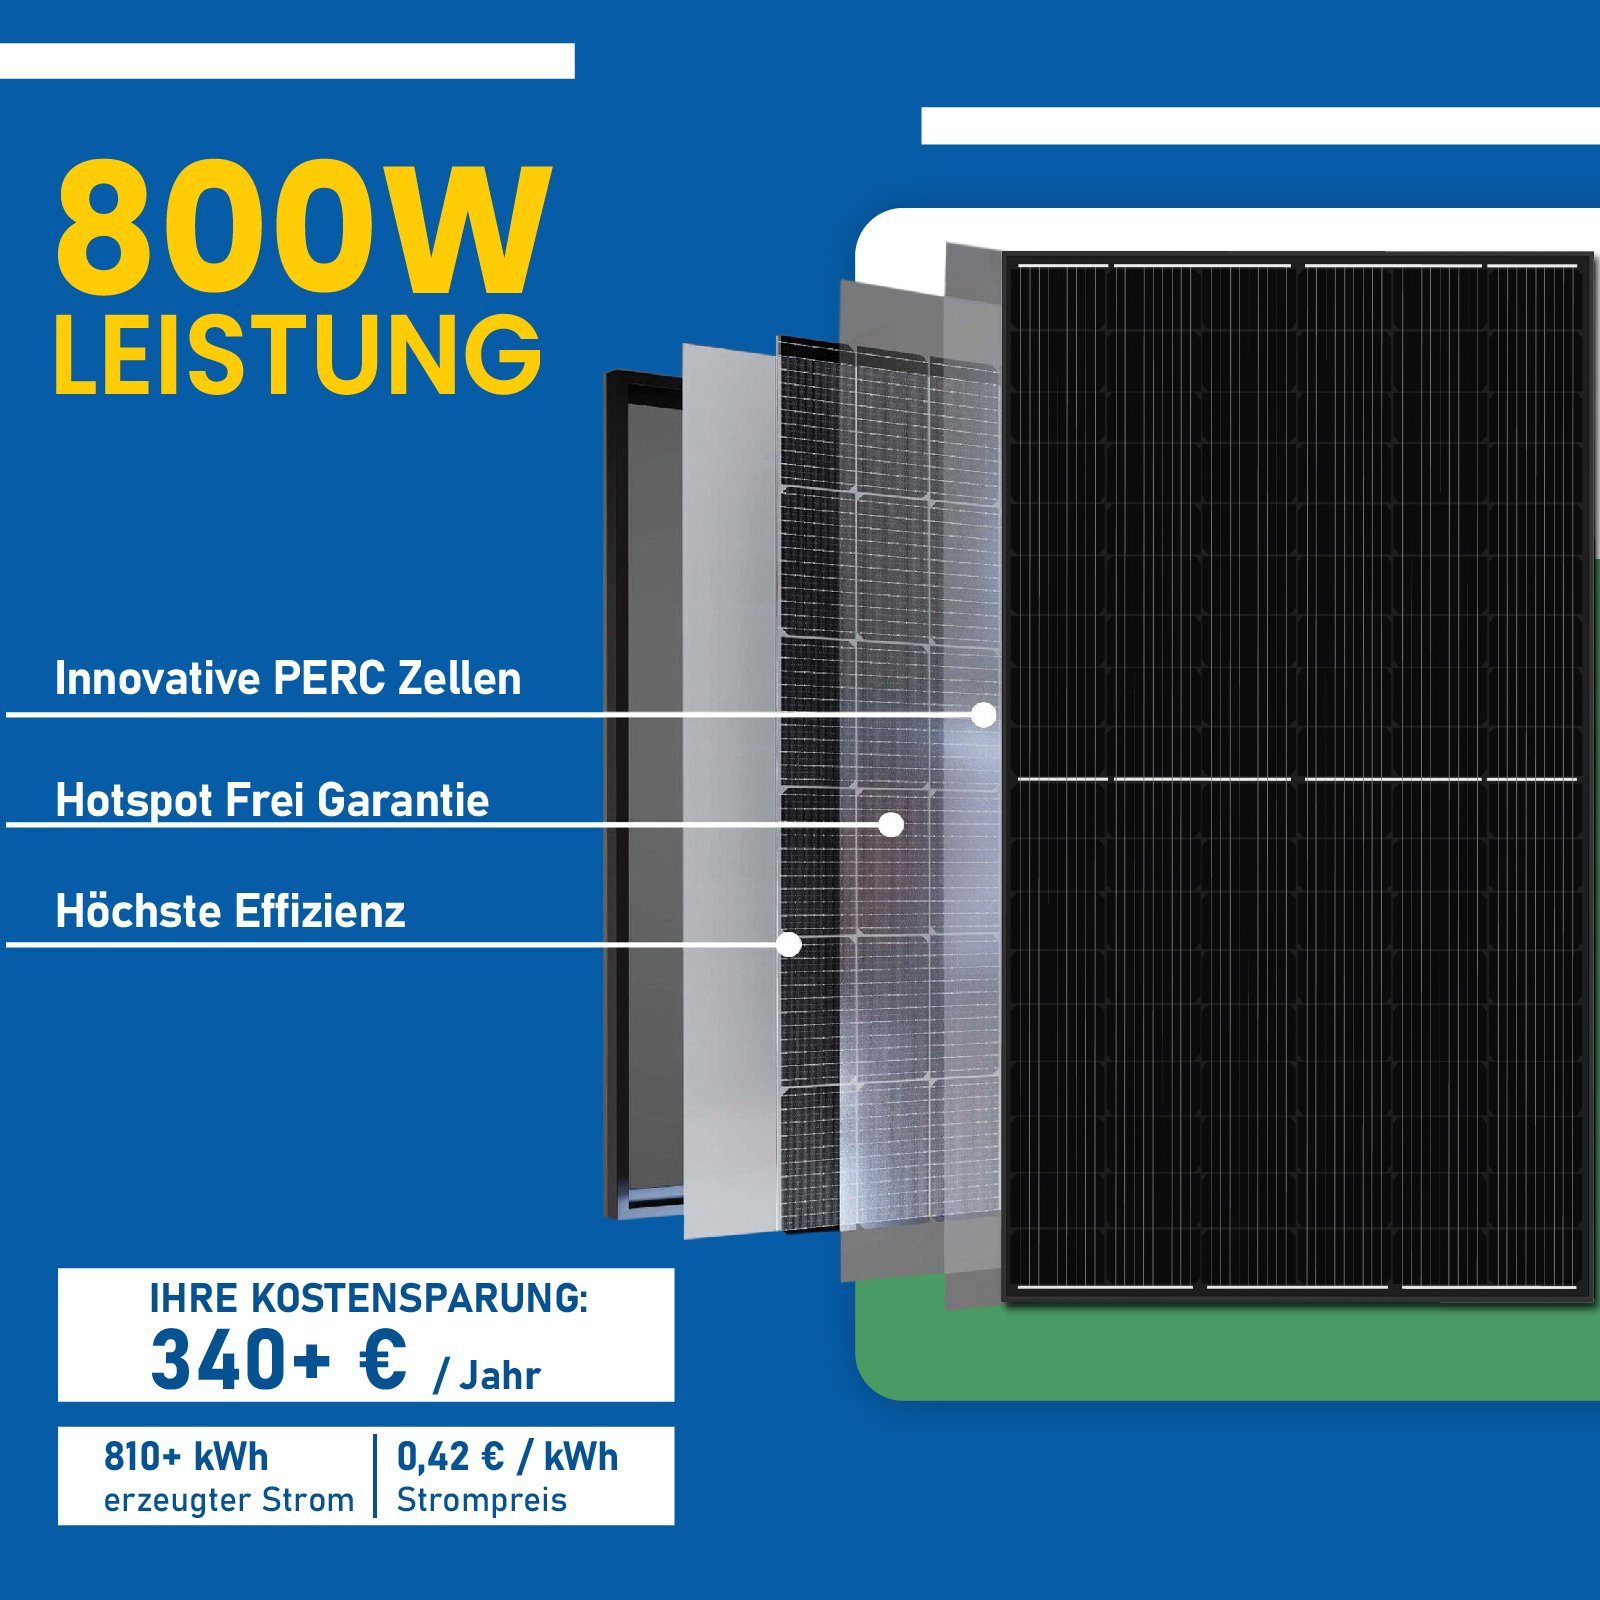 EPP.Solar Solaranlage 800W WIFI 800W Balkonkraftwerk, Hypontech Wechselrichter PV-Montage, Photovoltaik Mit Eckig Upgradefähiger Balkongeländer